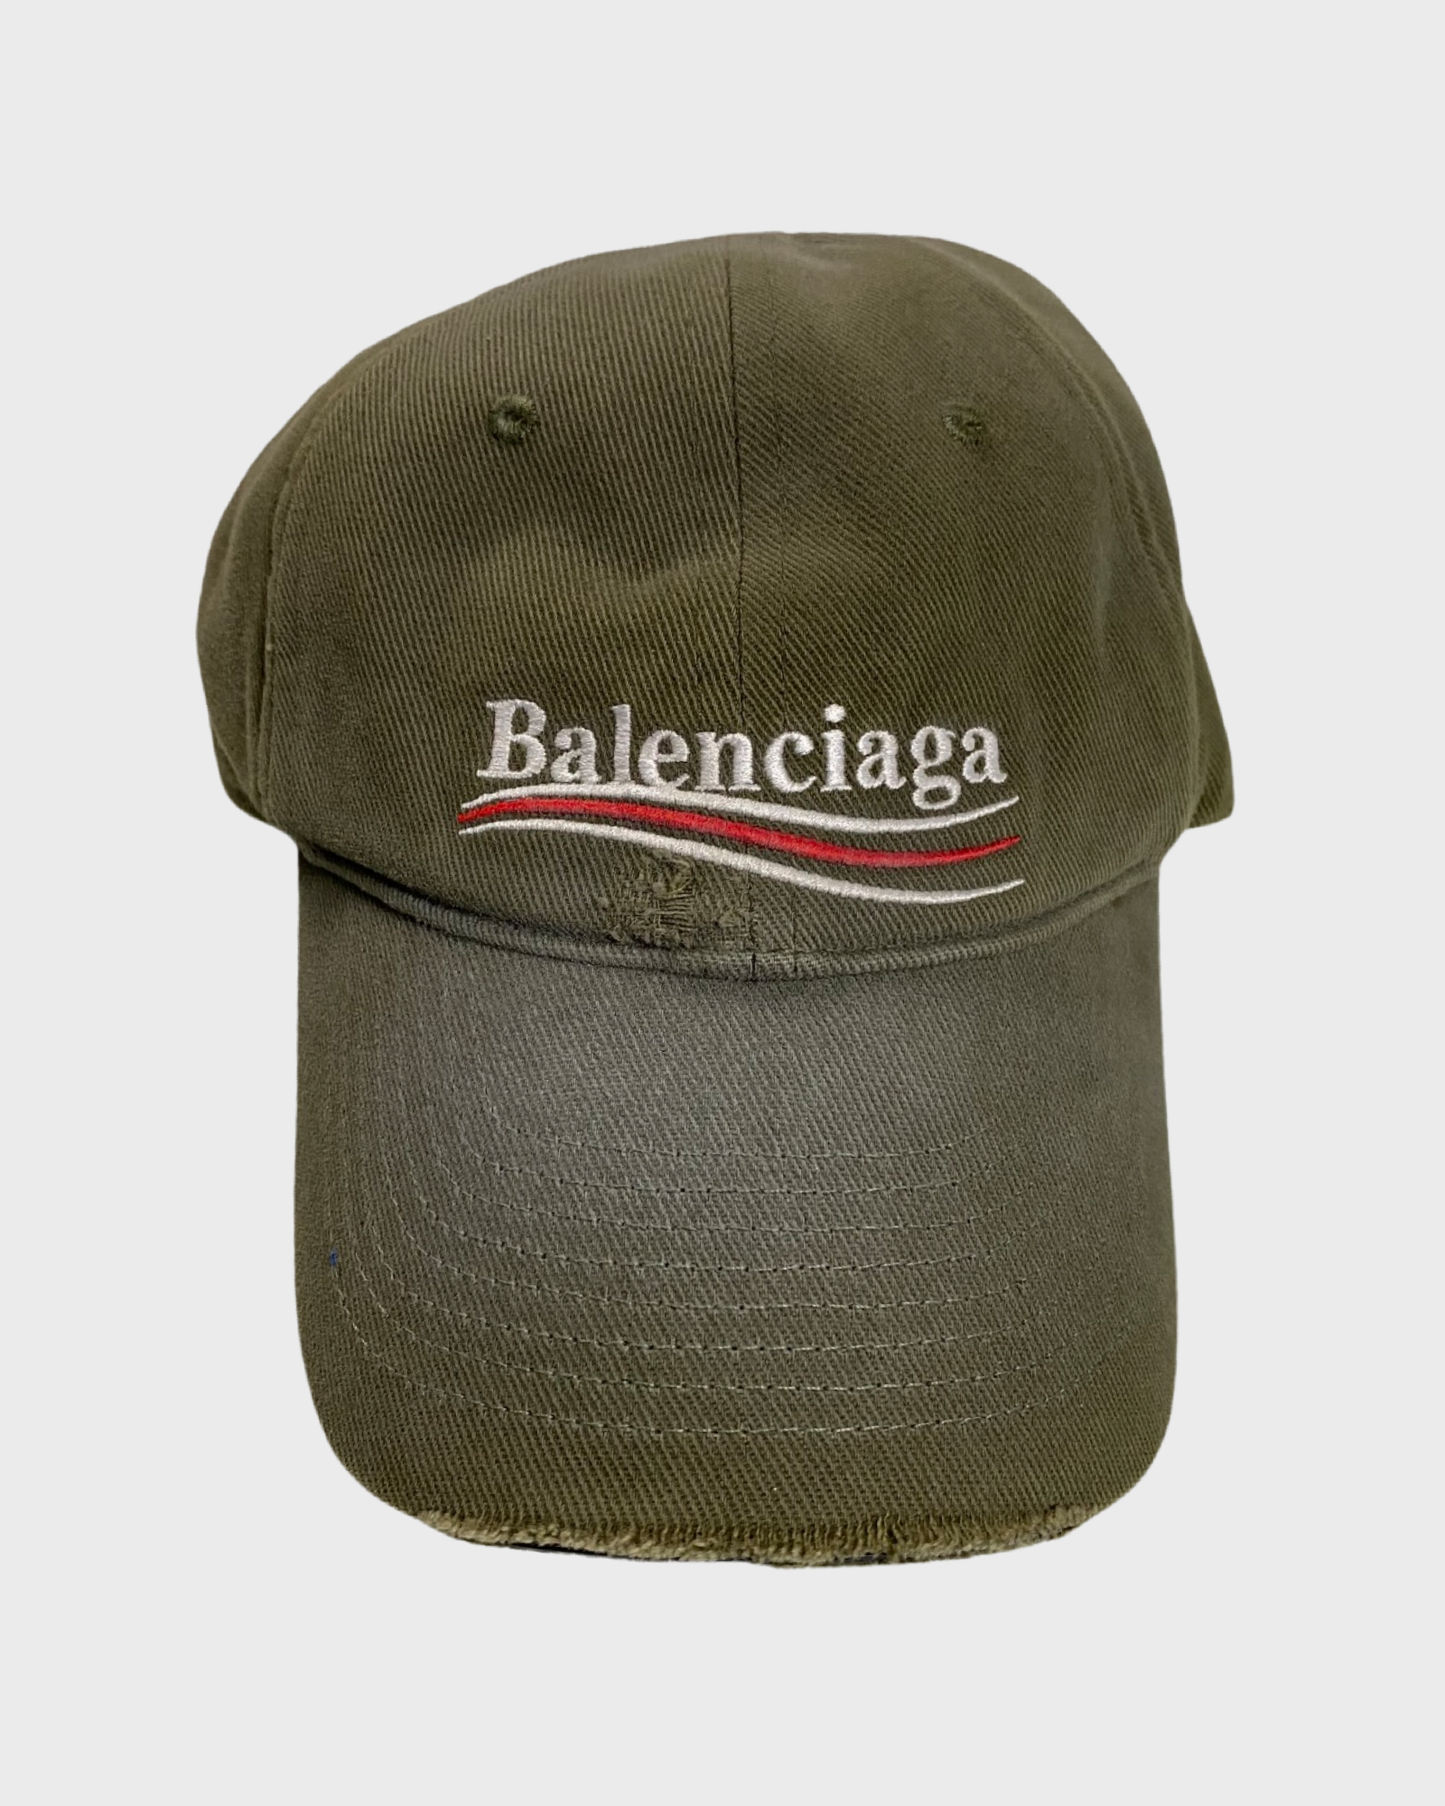 Balenciaga distressed campaign cap khaki green SZ:L